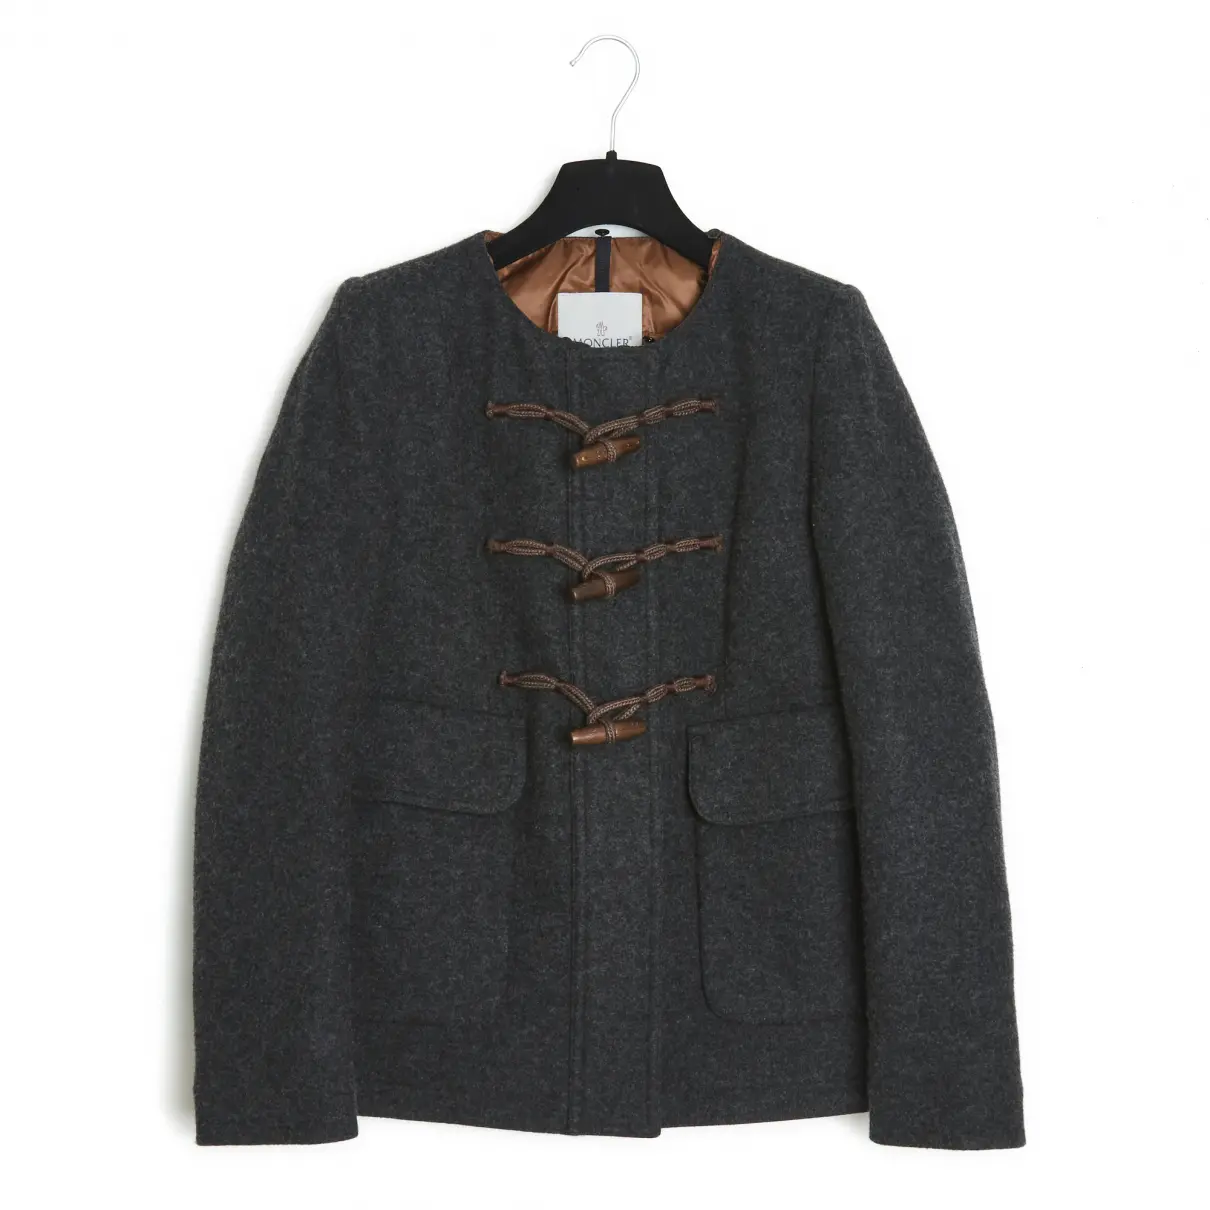 Buy Moncler Fur Hood wool jacket online